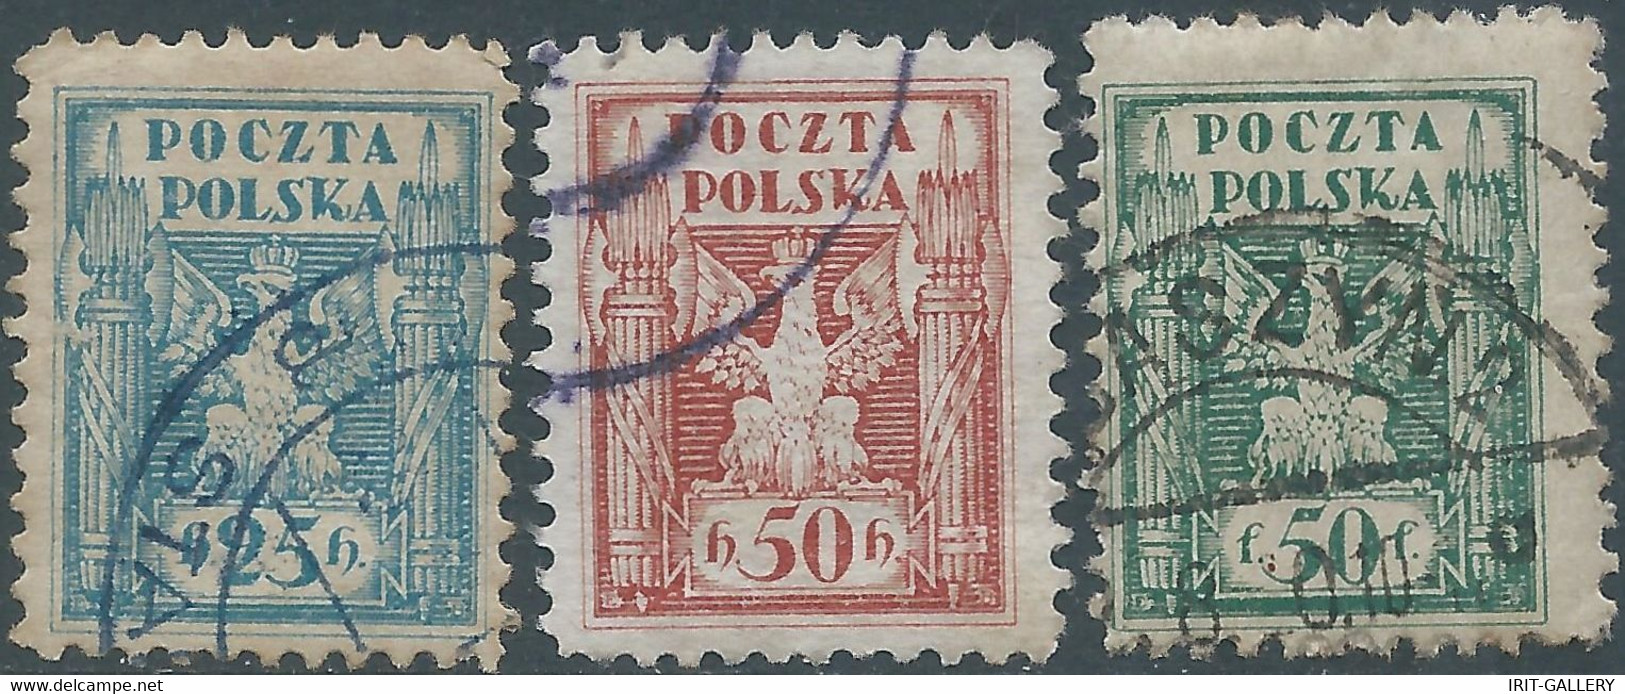 POLONIA-POLAND-POLSKA,1919 South Poland Issues,Obliterated - Usados